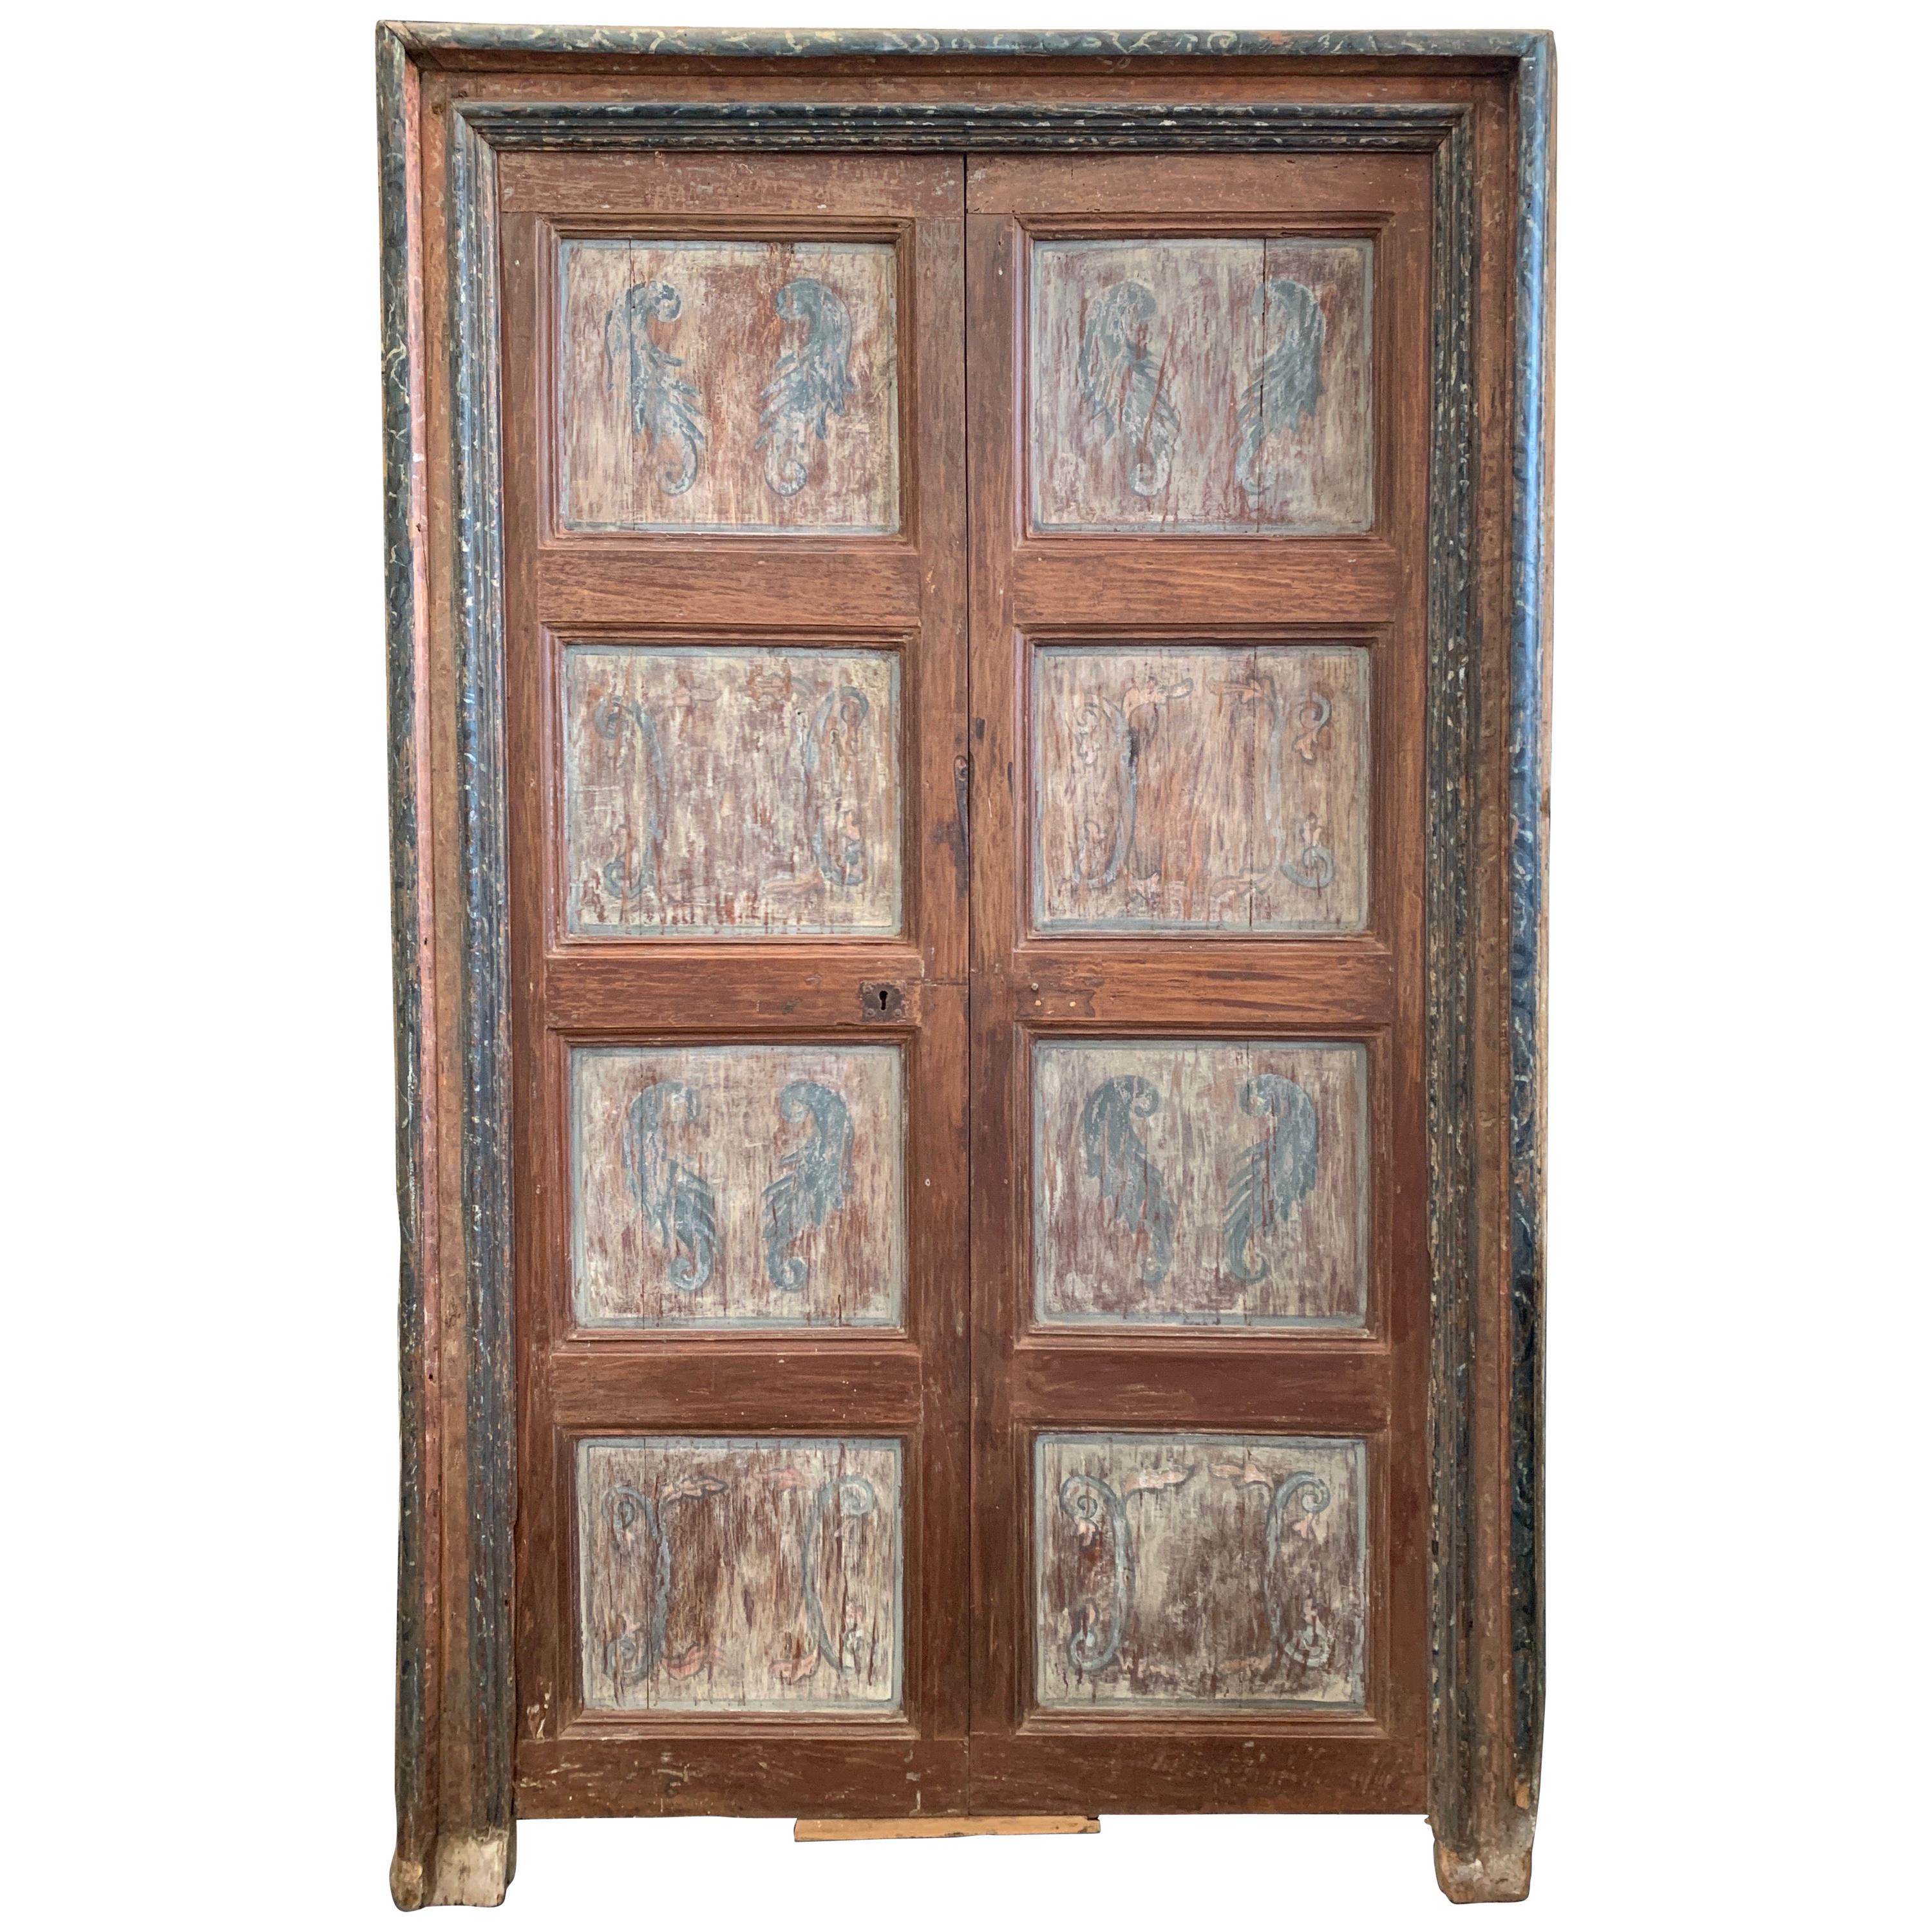 Spanische Türen aus dem 18. Jahrhundert mit polychromer Bemalung und blauer Umrandung